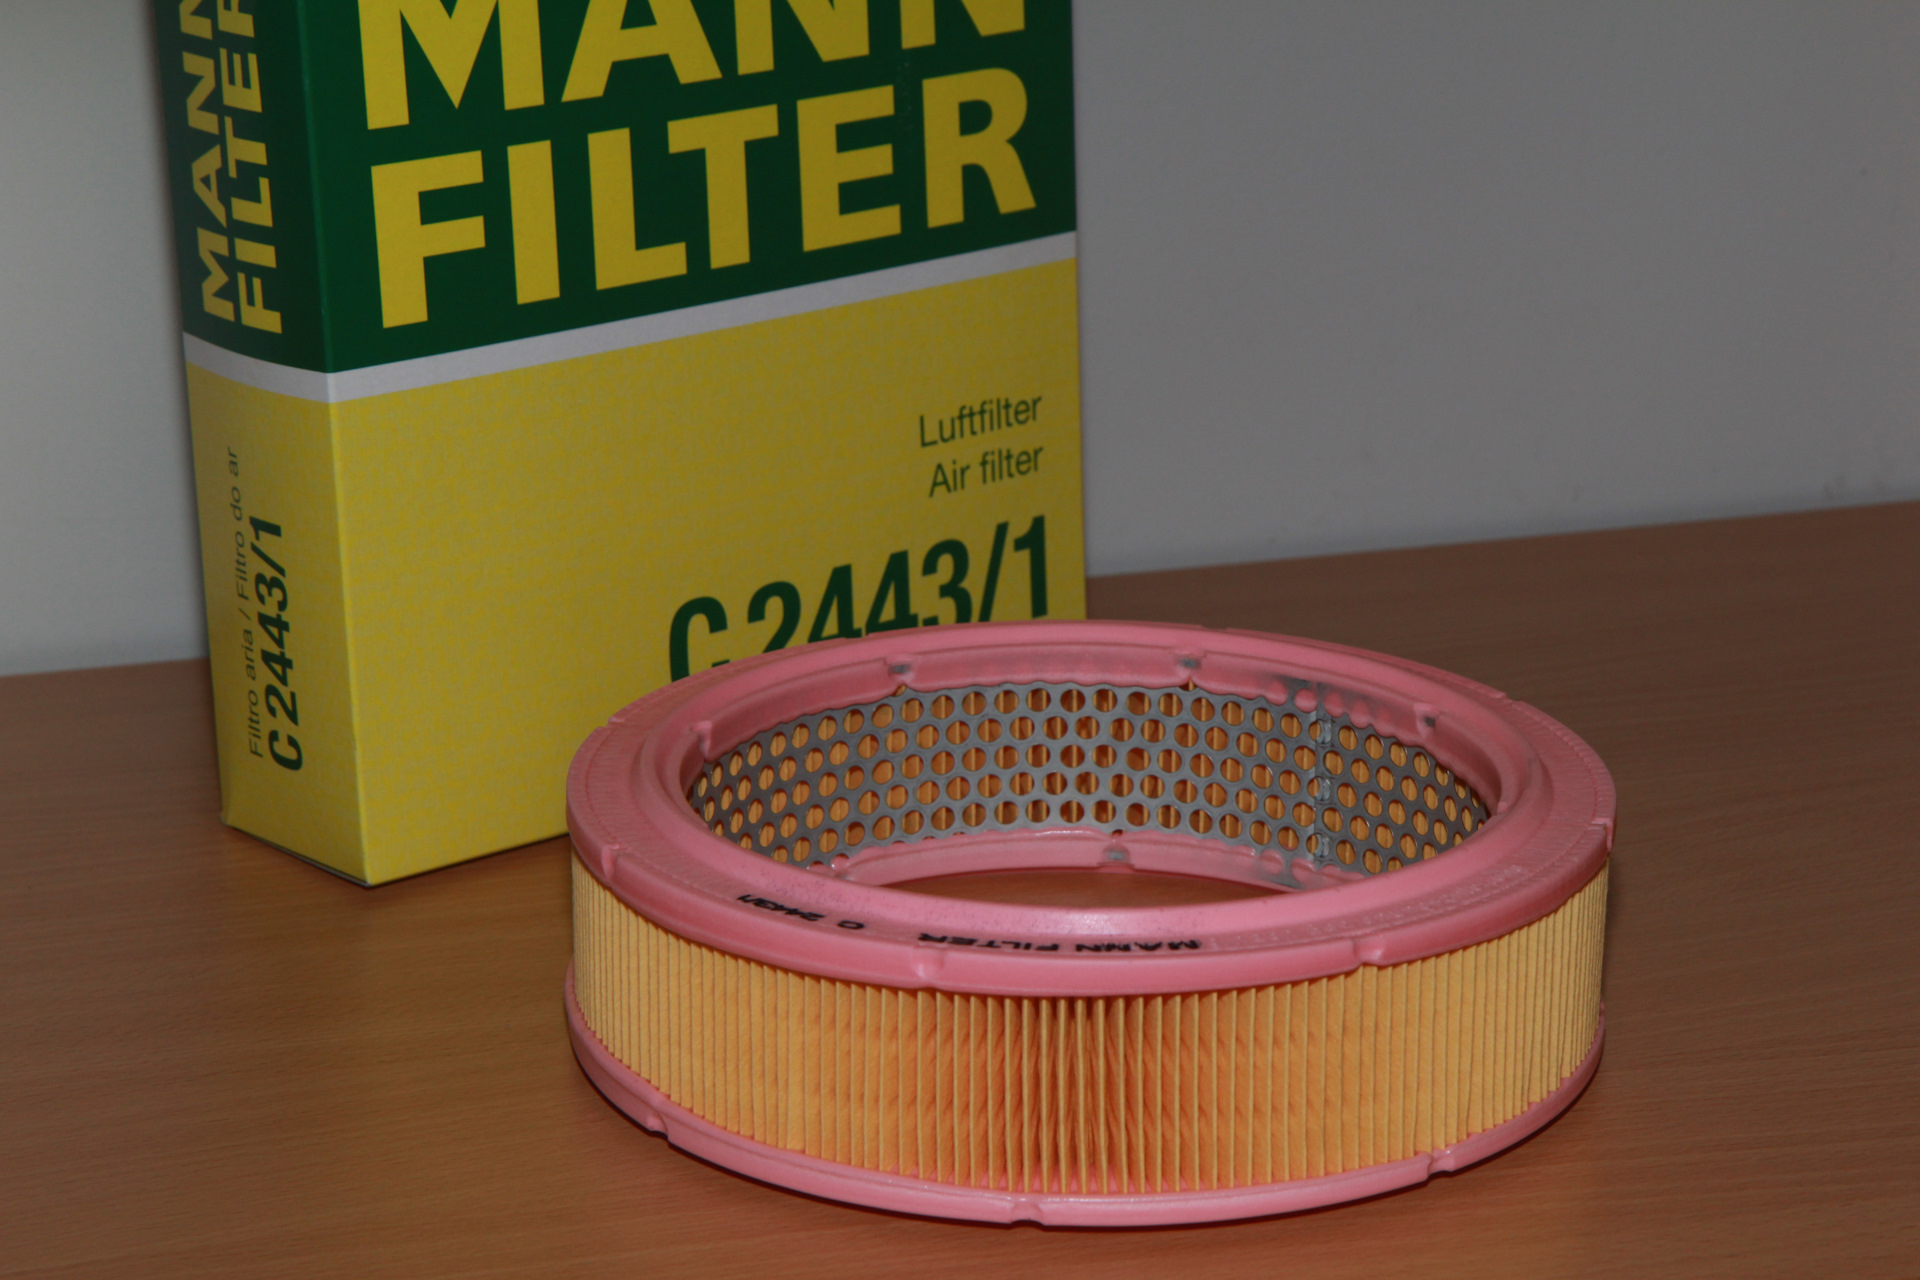 Mann filter воздушный фильтр. Mann c27010 воздушный фильтр. Фильтр воздушный ВАЗ 2108 усиленный. Mann c2443/1 воздушный фильтр. Mann фильтр воздушный c24054.